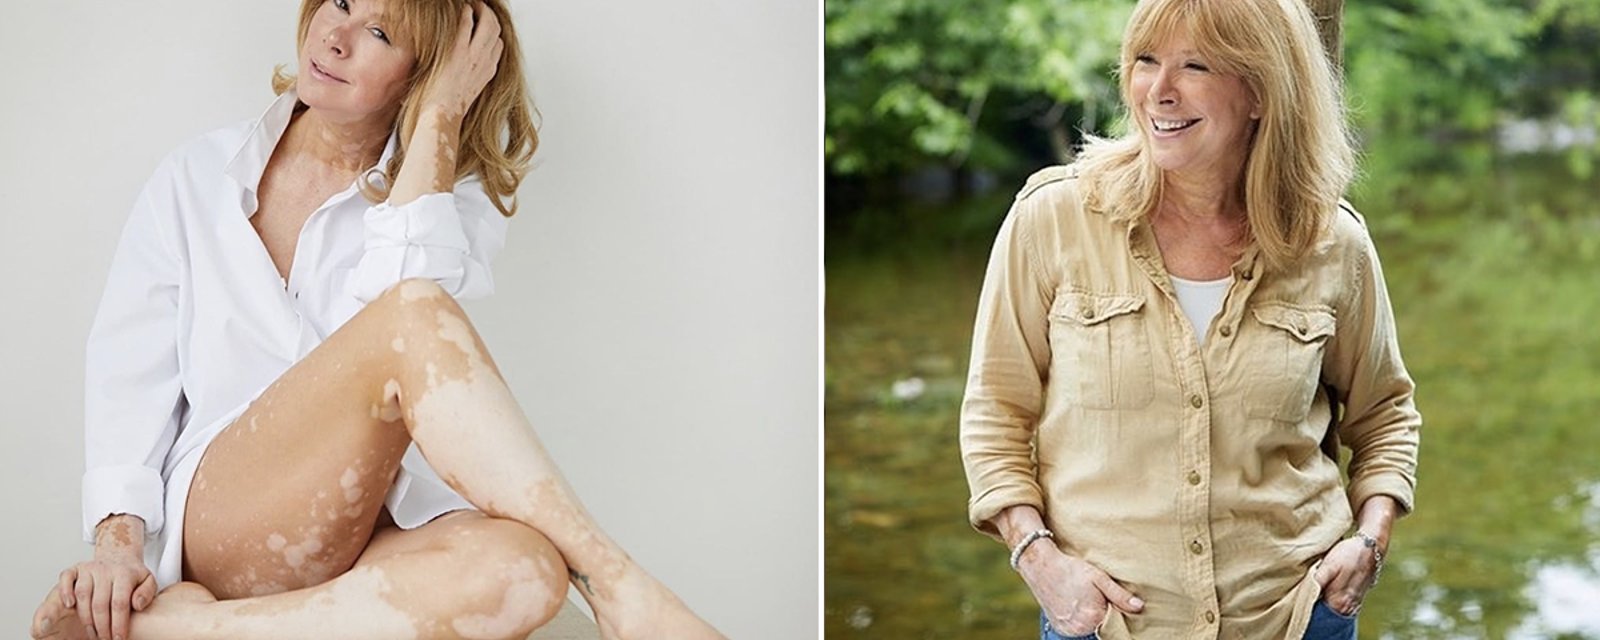 Chantal Lacroix se dévoile dans une nouvelle photo où elle assume son vitiligo et elle est rayonnante